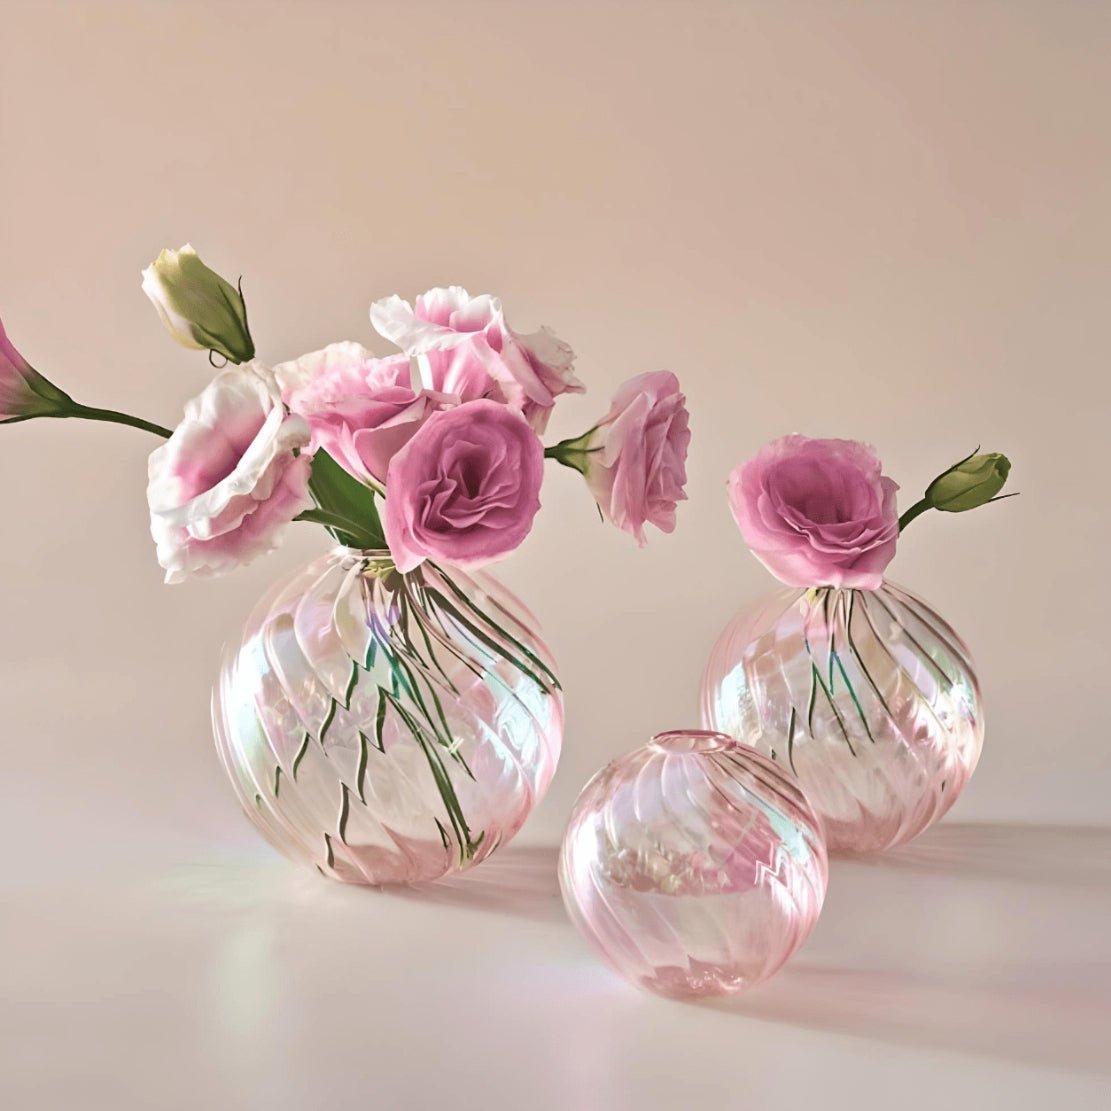 Pink, shiny, elegant ball glass flower vases